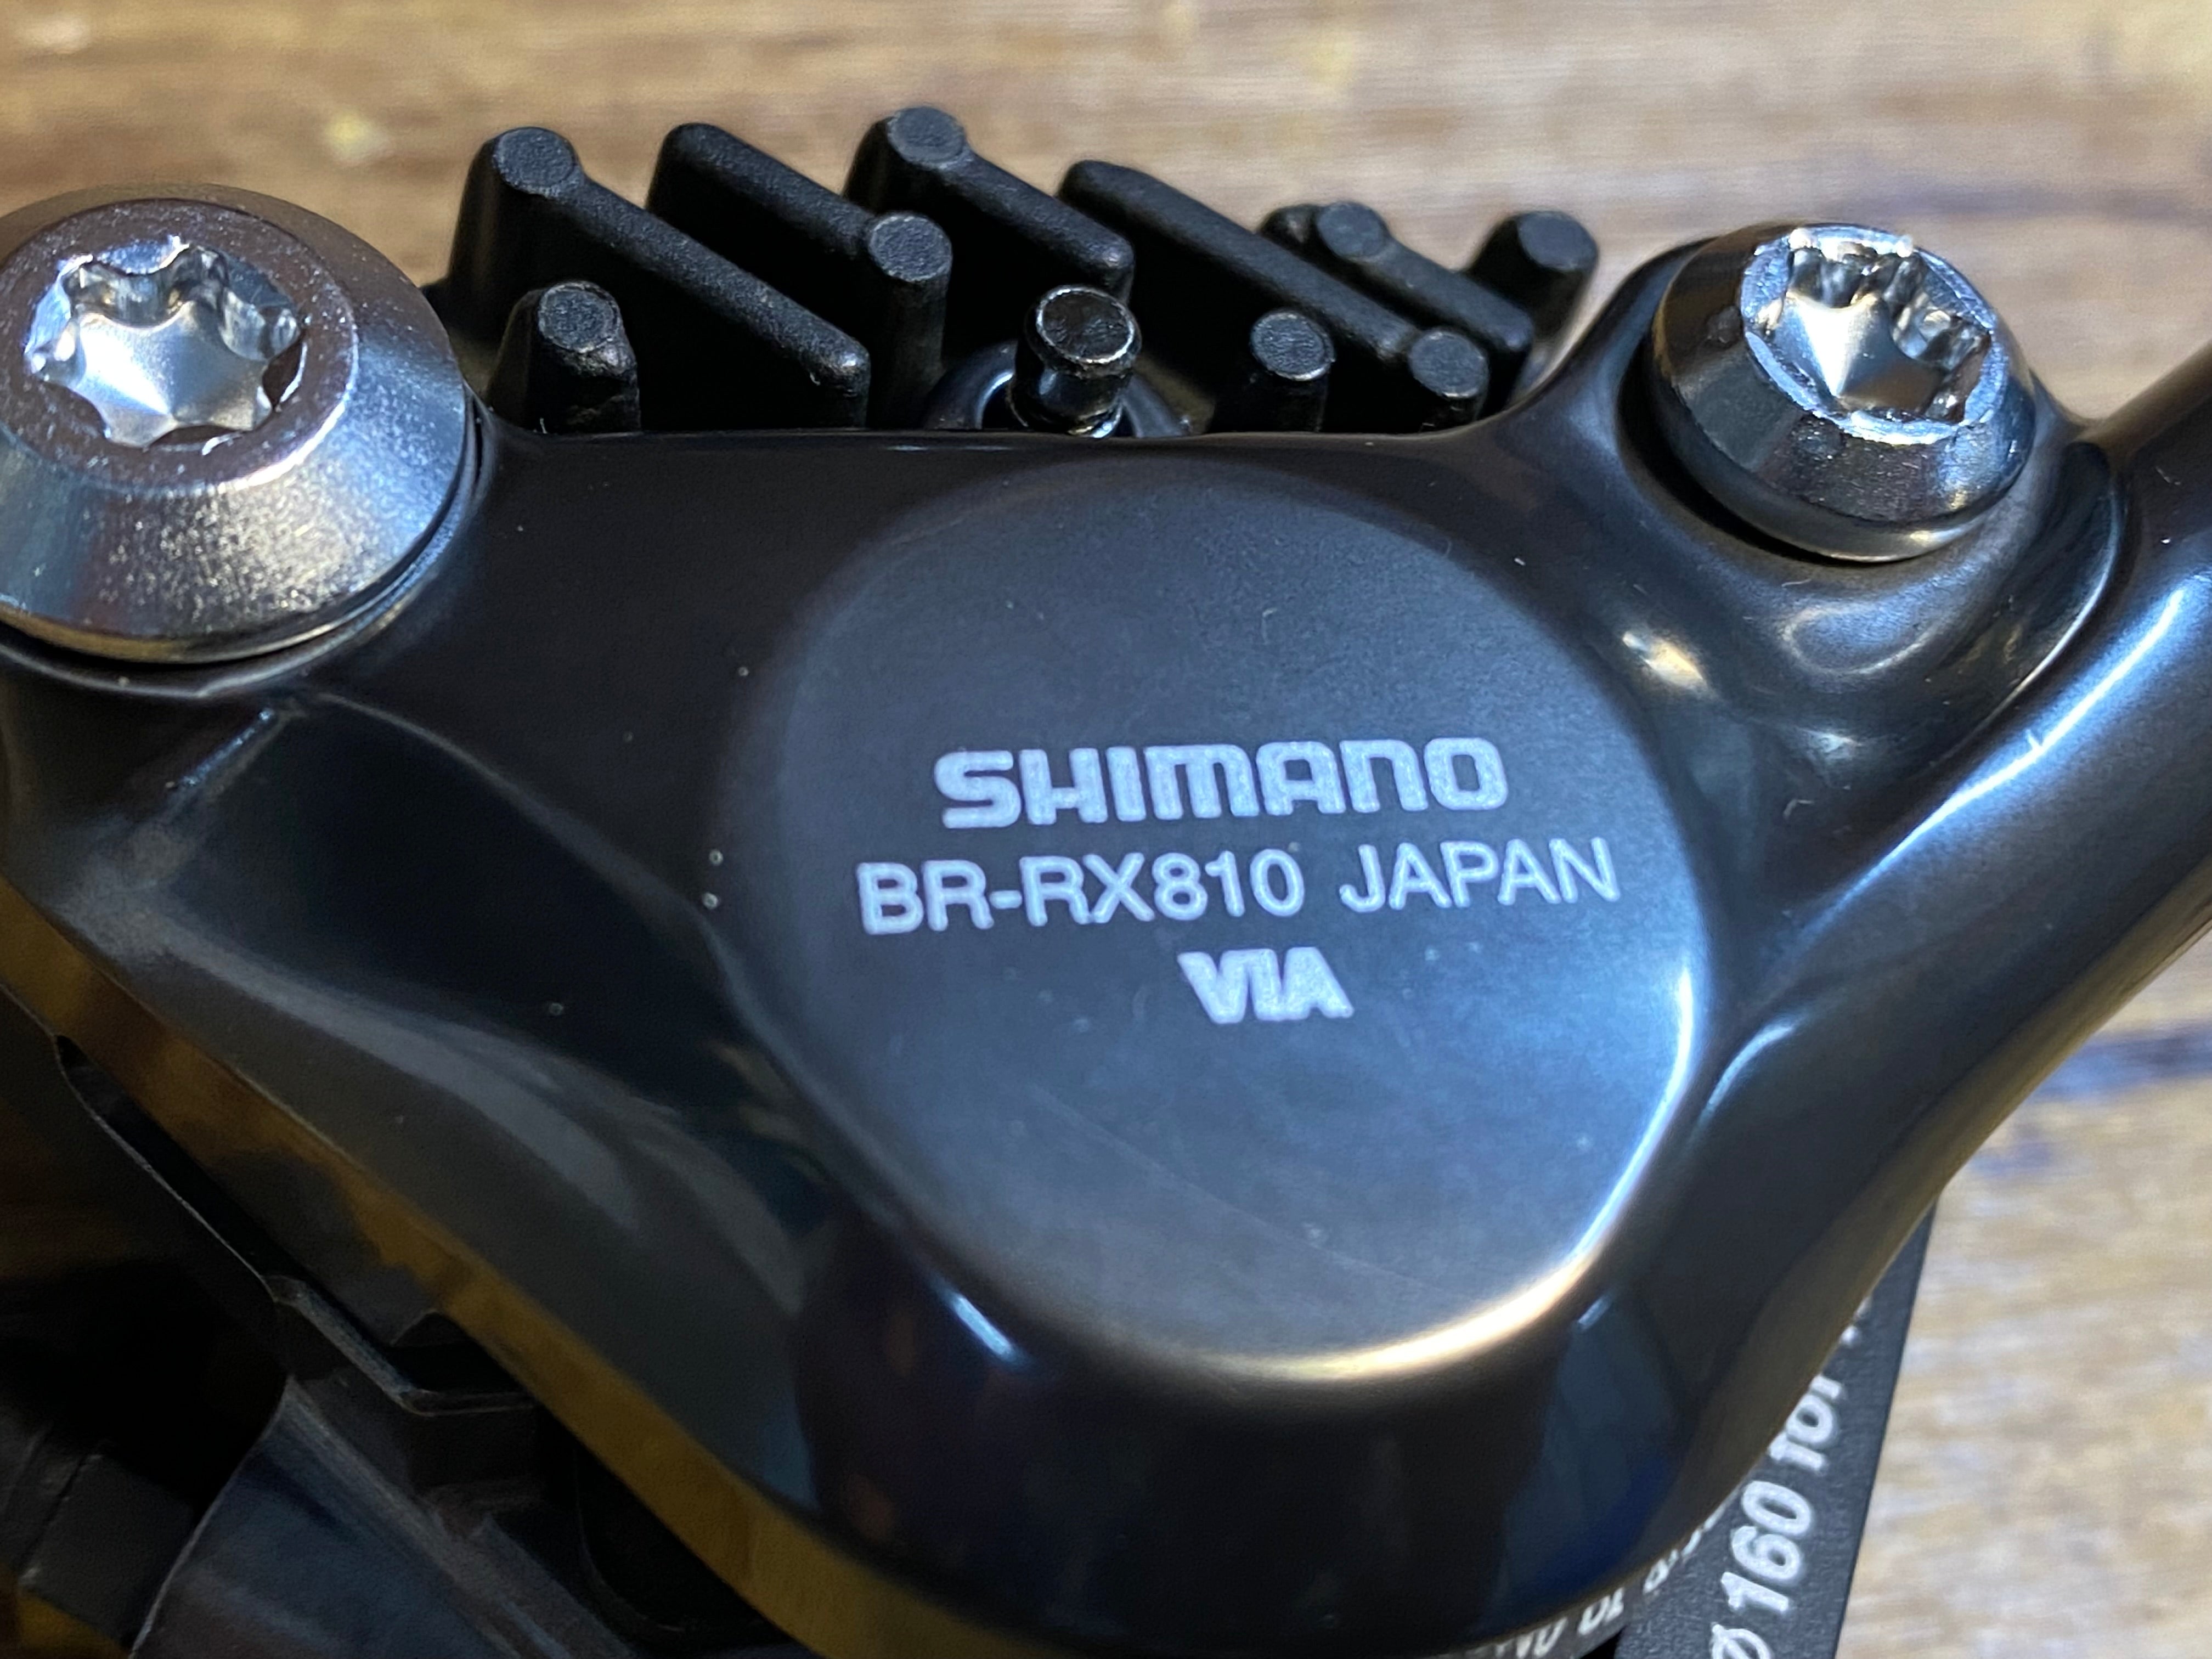 HF046 シマノ SHIMANO GRX BR-RX810 ディスクブレーキキャリパー 前後